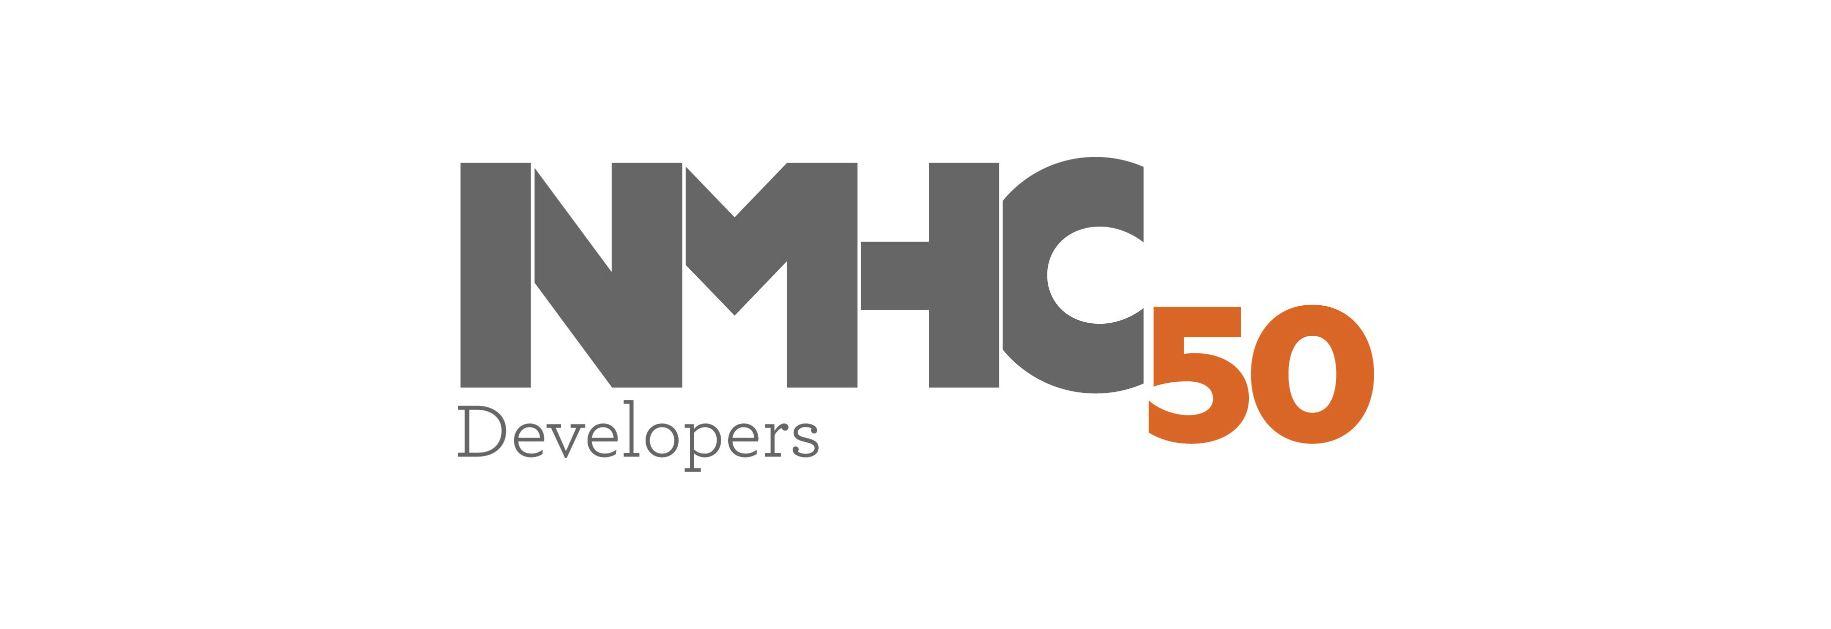 Developers Logo - NMHC 50 Developers Logo